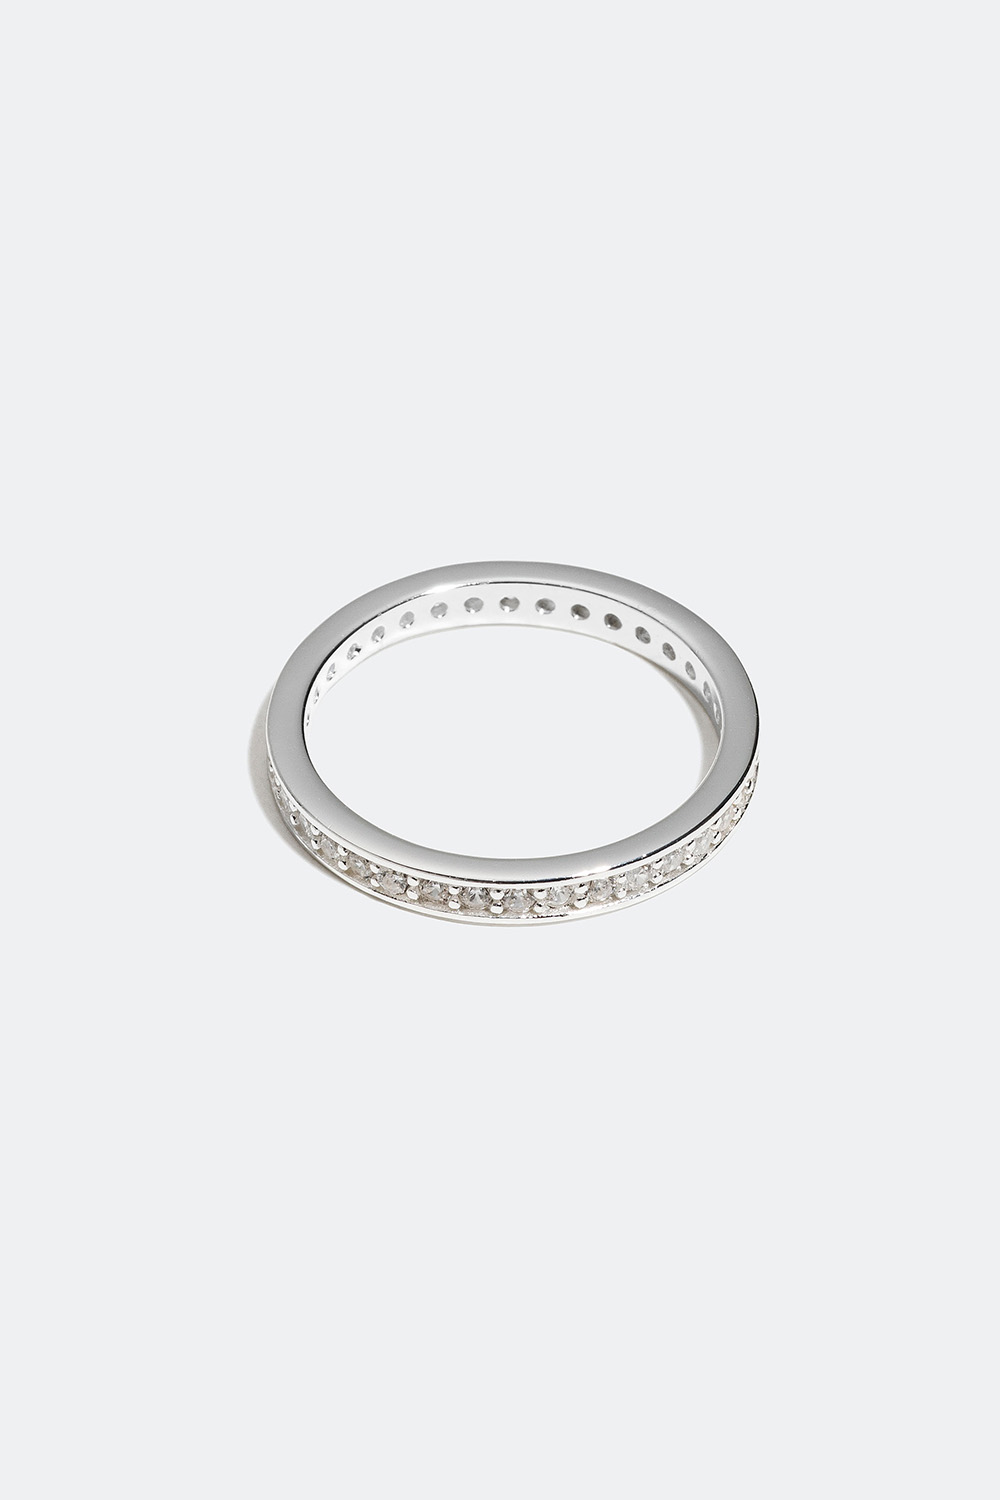 Ring i ægte sølv med hvide Cubic Zirconia i gruppen Ægte sølv / Sølvringe / Sølv hos Glitter (556000591)